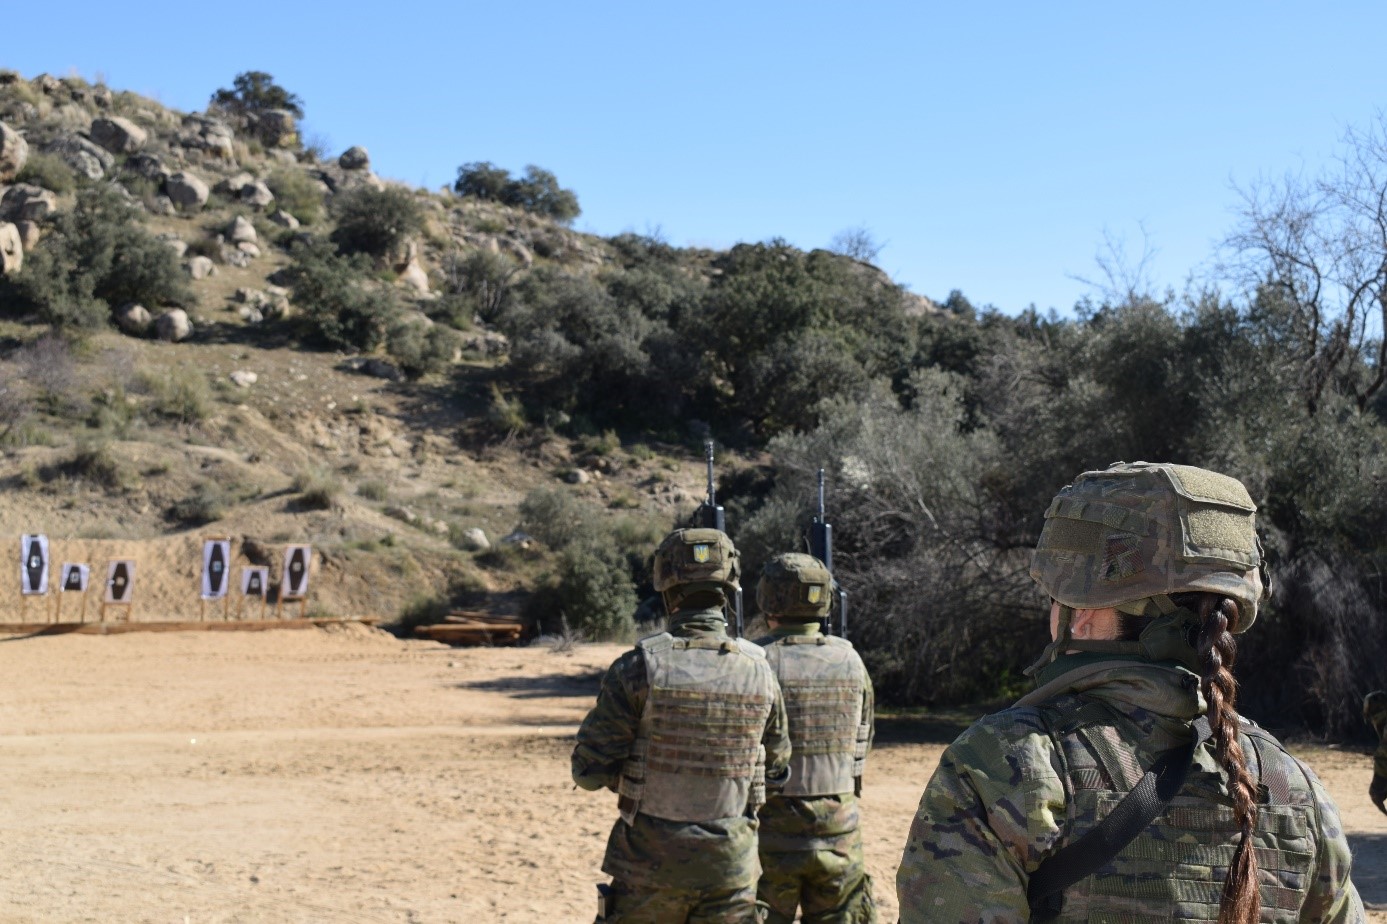 Combat shooting in Toledo, Spain